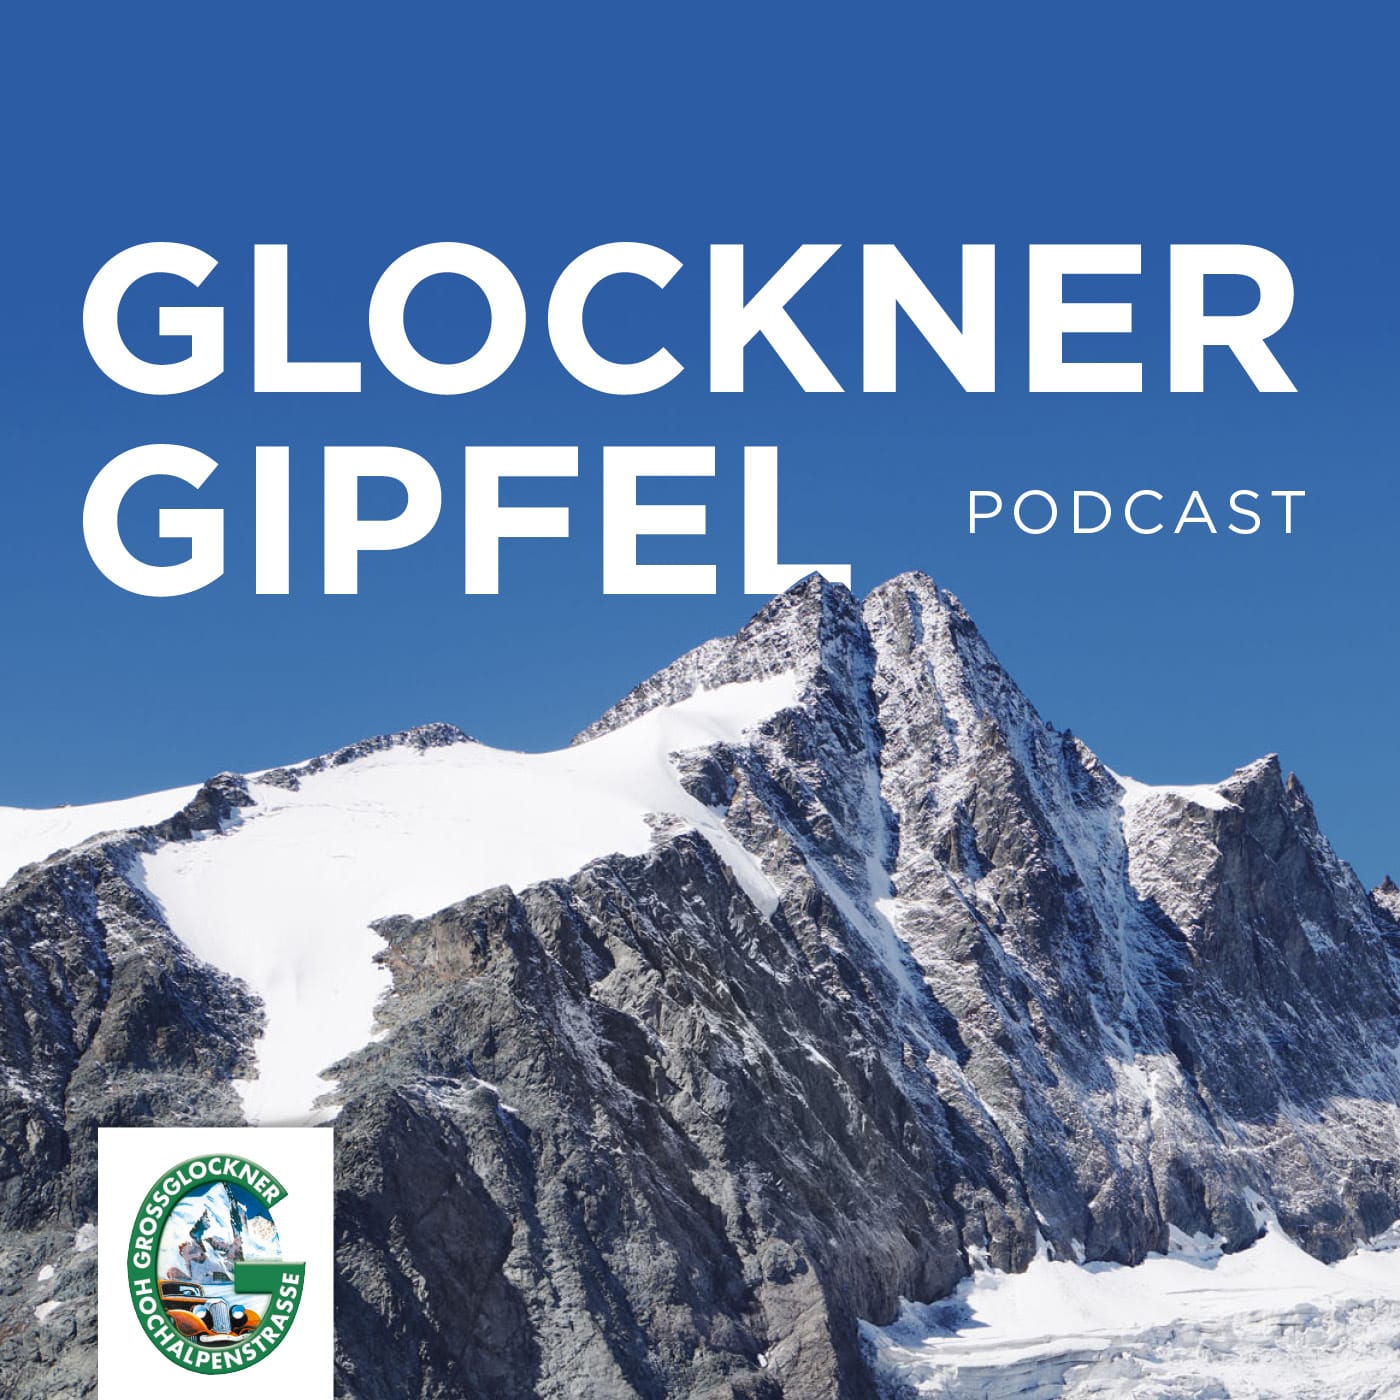 Glocknergipfel vom Großglockner der Reise und Tourismuspodcast aus Österreich